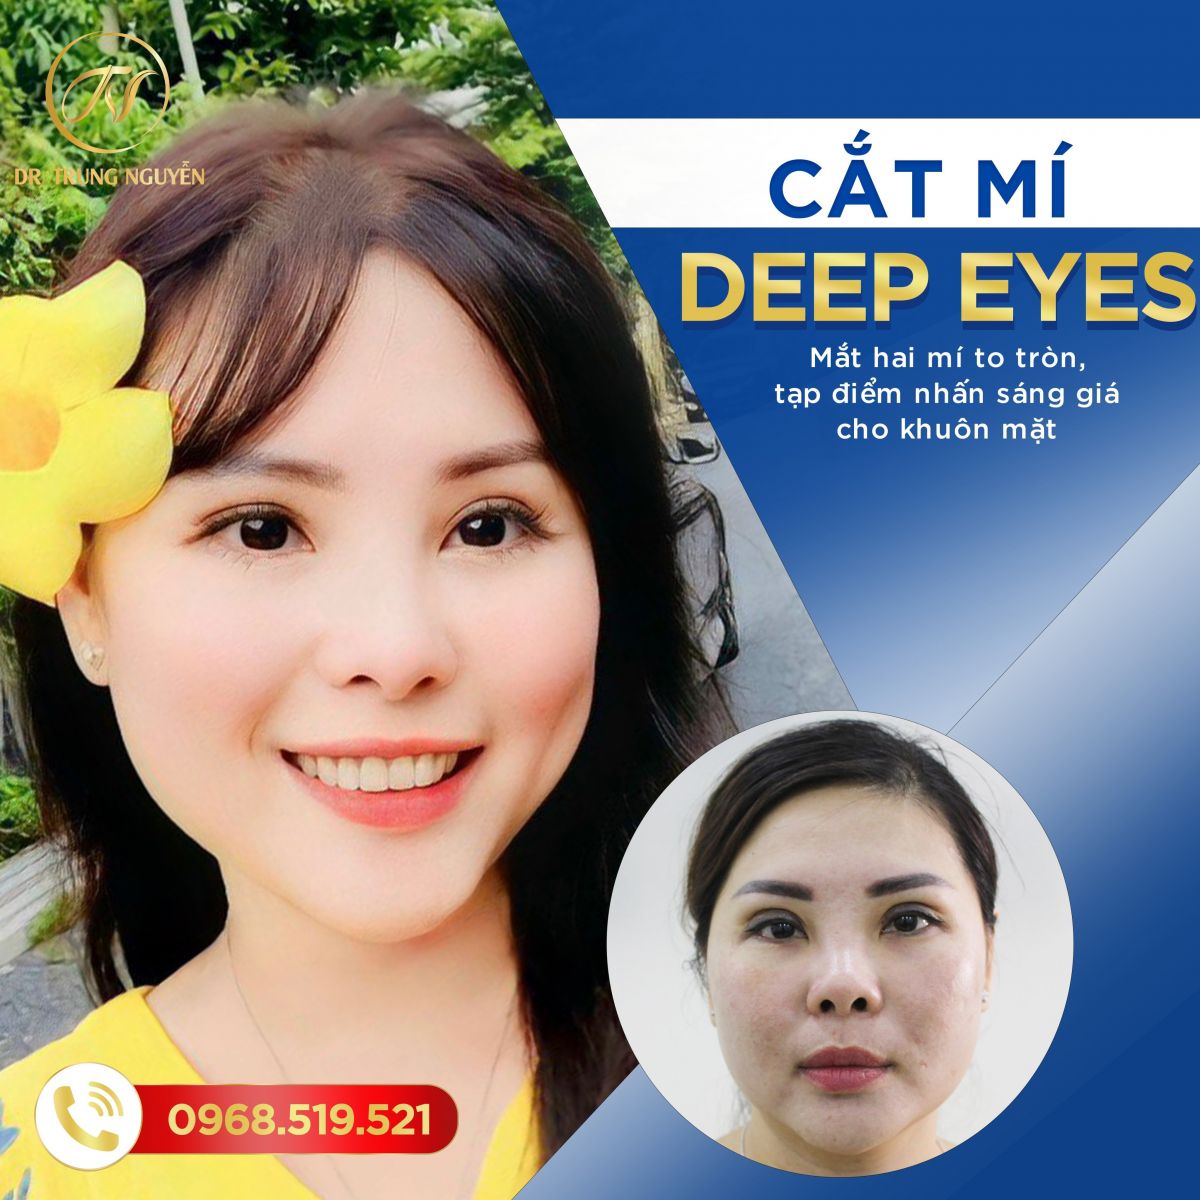 Hình ảnh khách hàng cắt mí Deep eyes tự nhiên tại Dr Trung Nguyễn